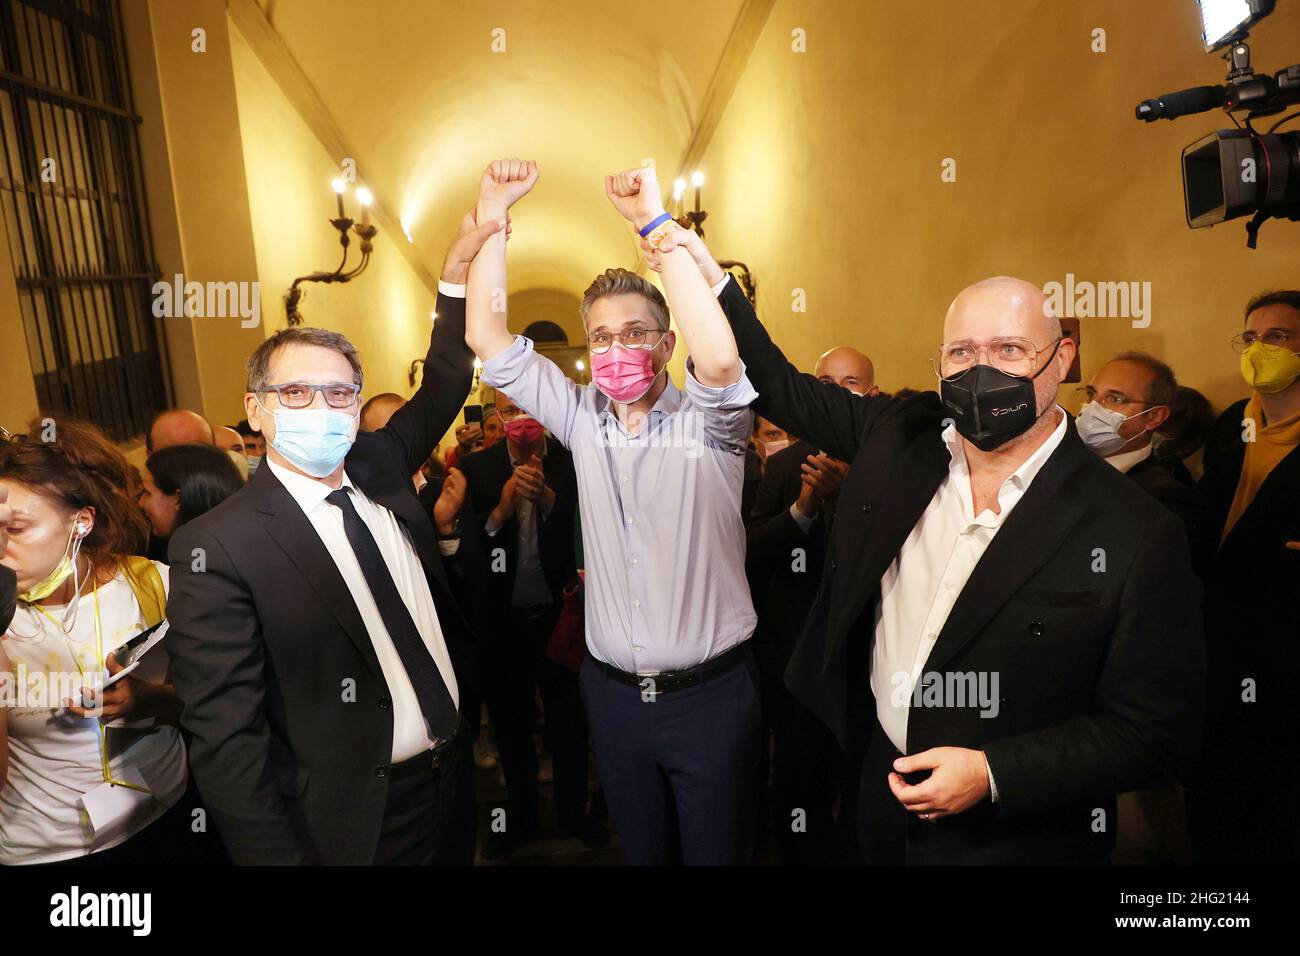 Michele Nucci/LaPresse Octubre de 2021 - Bolonia, Italia - noticias en la foto: Celebraciones en el Palazzo d'Accursio, sede del Municipio de Bolonia después de que Matteo Lepore ganó las elecciones administrativas Foto de stock